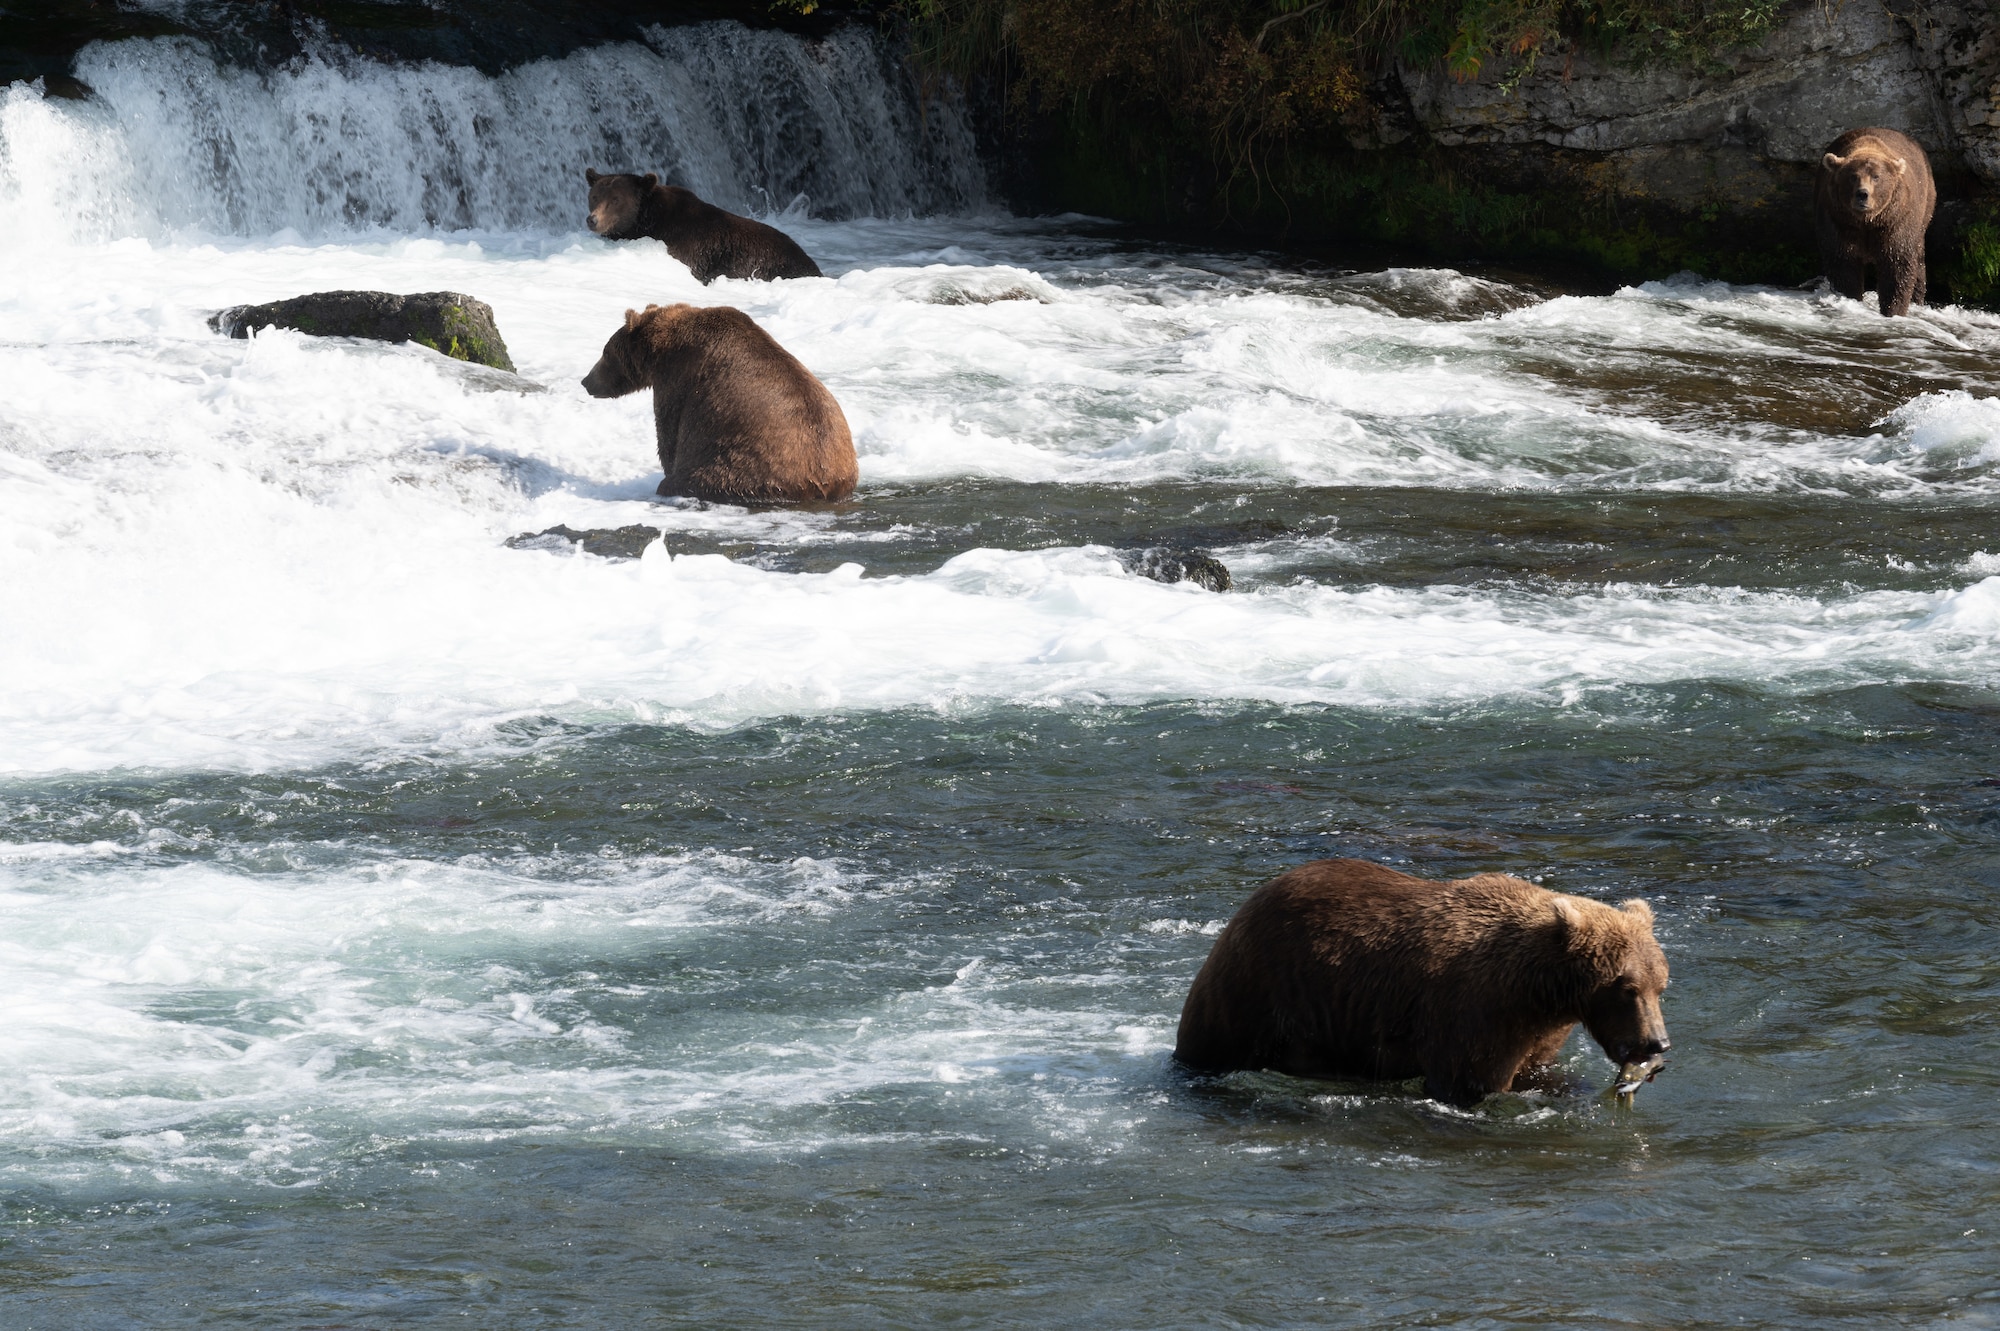 Service members visit Katmai for brown bear viewing